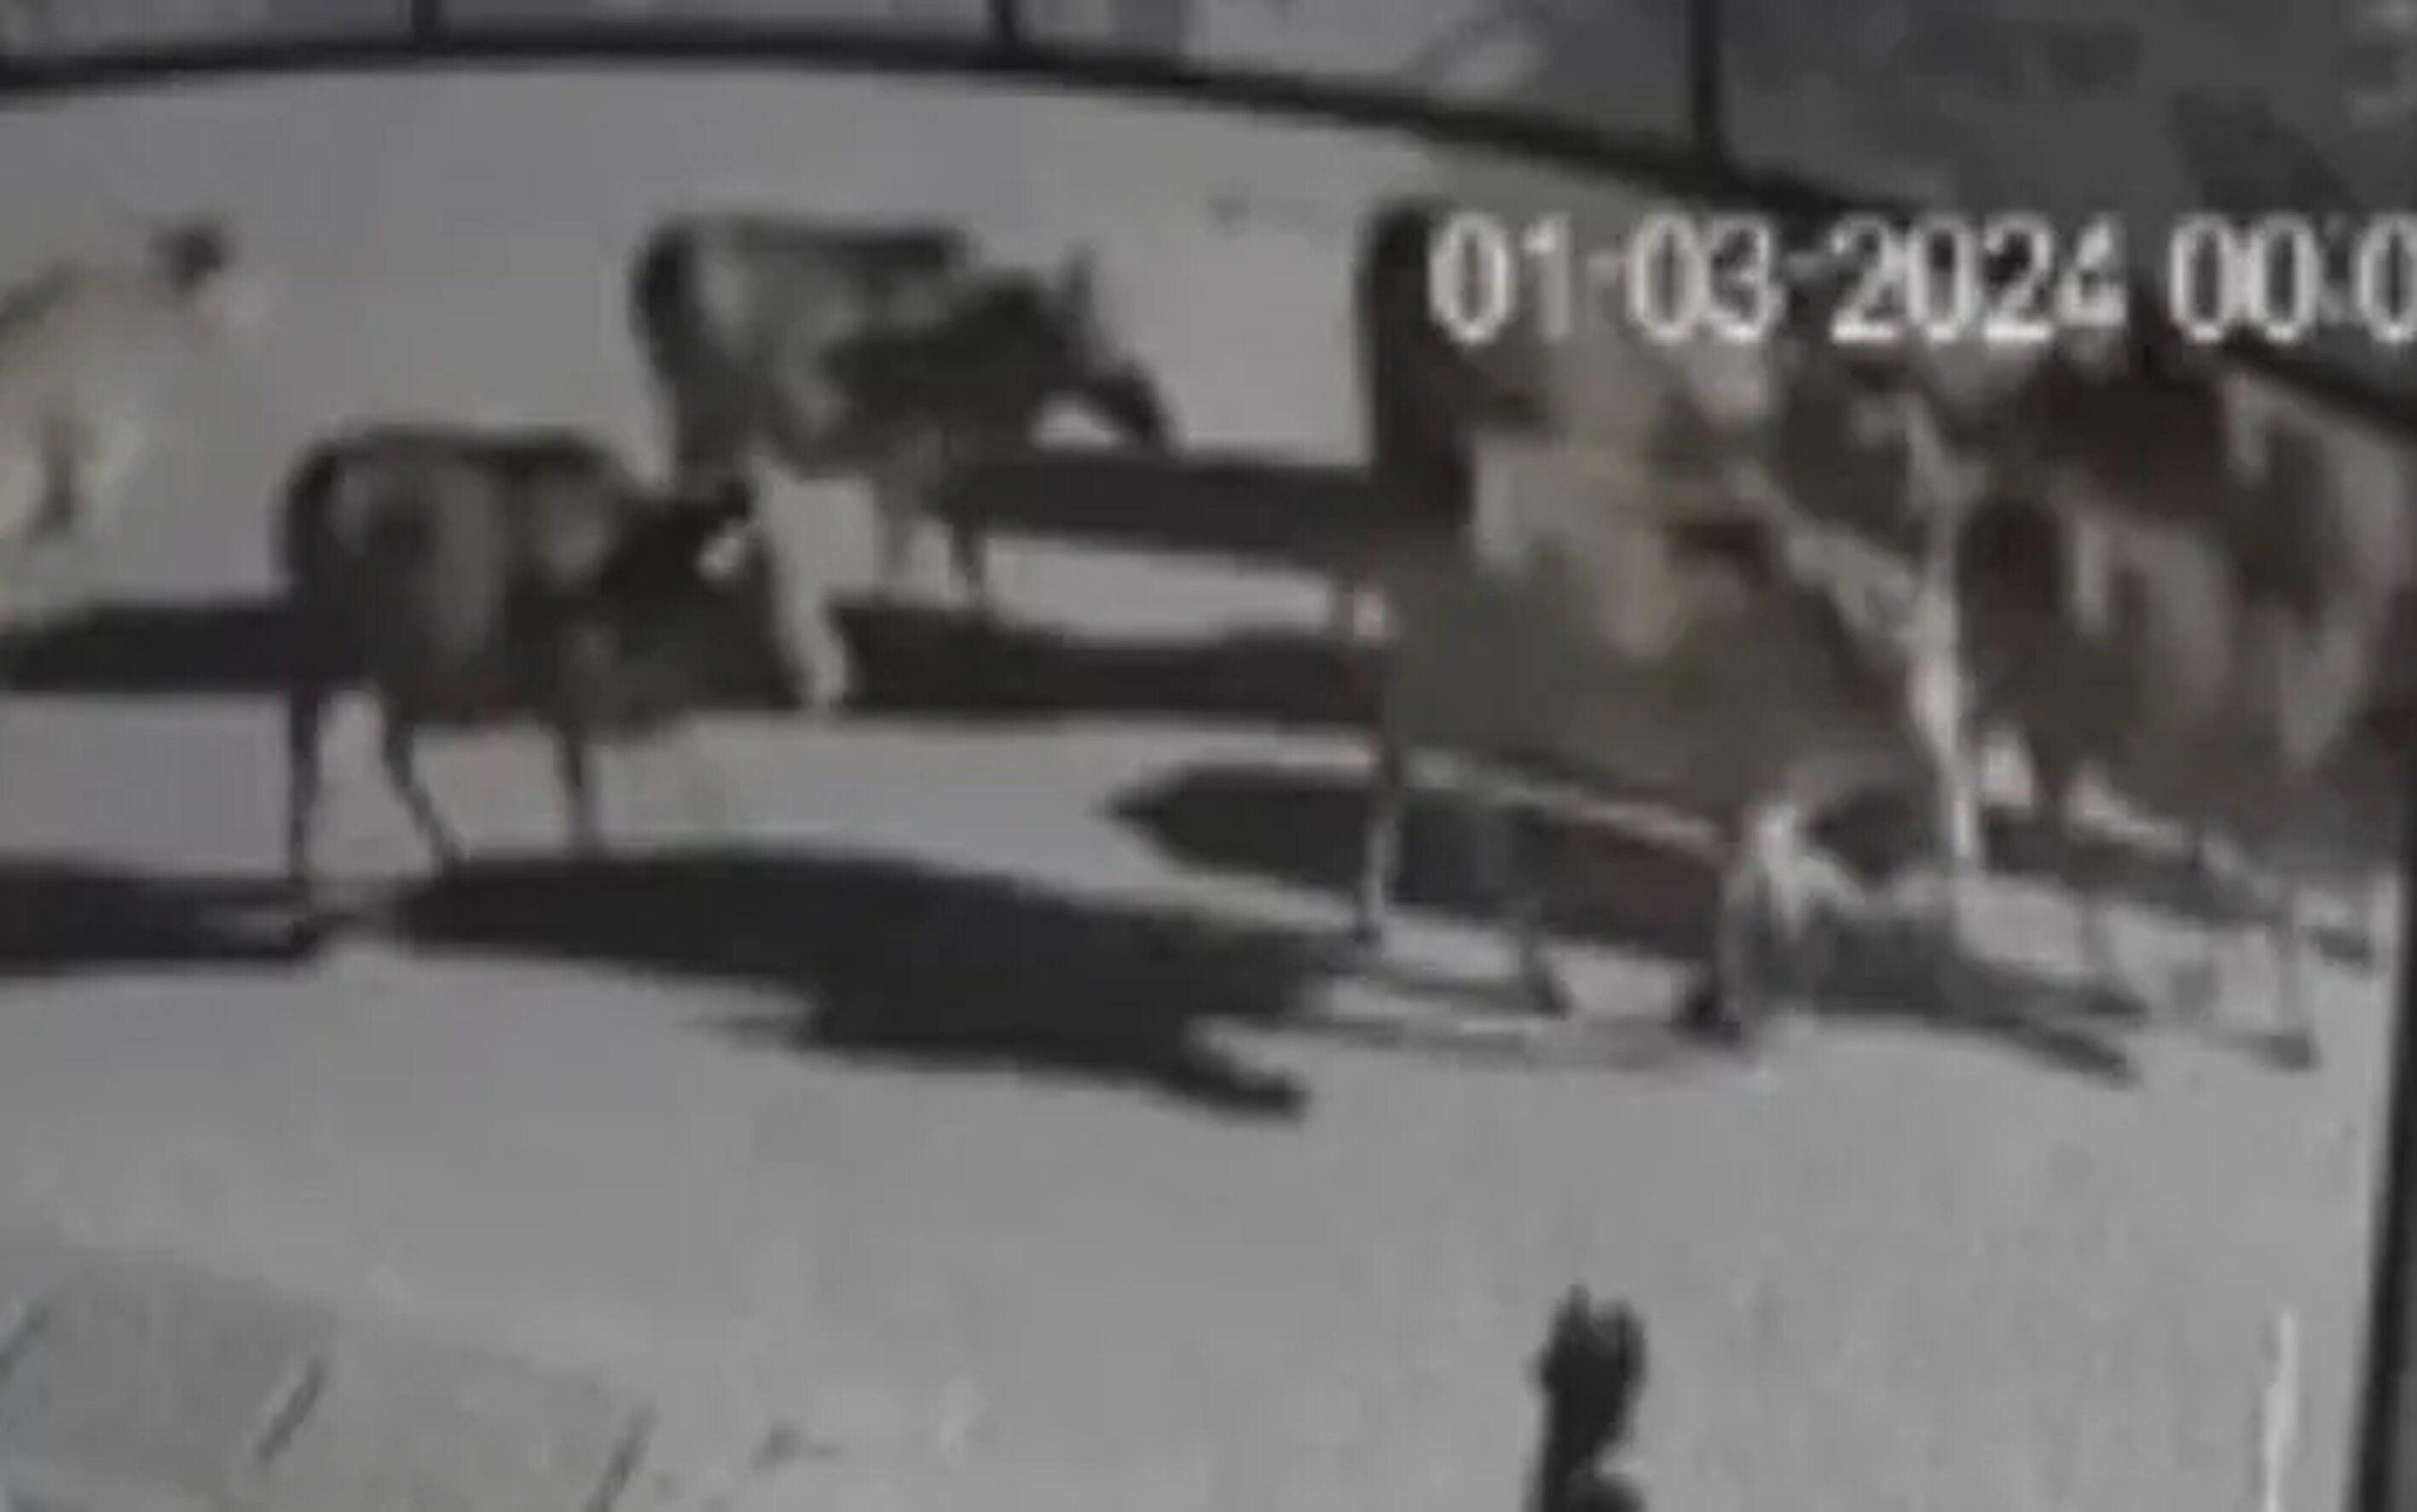 Camera an ninh ghi lại cảnh đàn bò nhà ông Phạm Thế B. bị người lạ mặt lùa đi lúc nửa đêm.